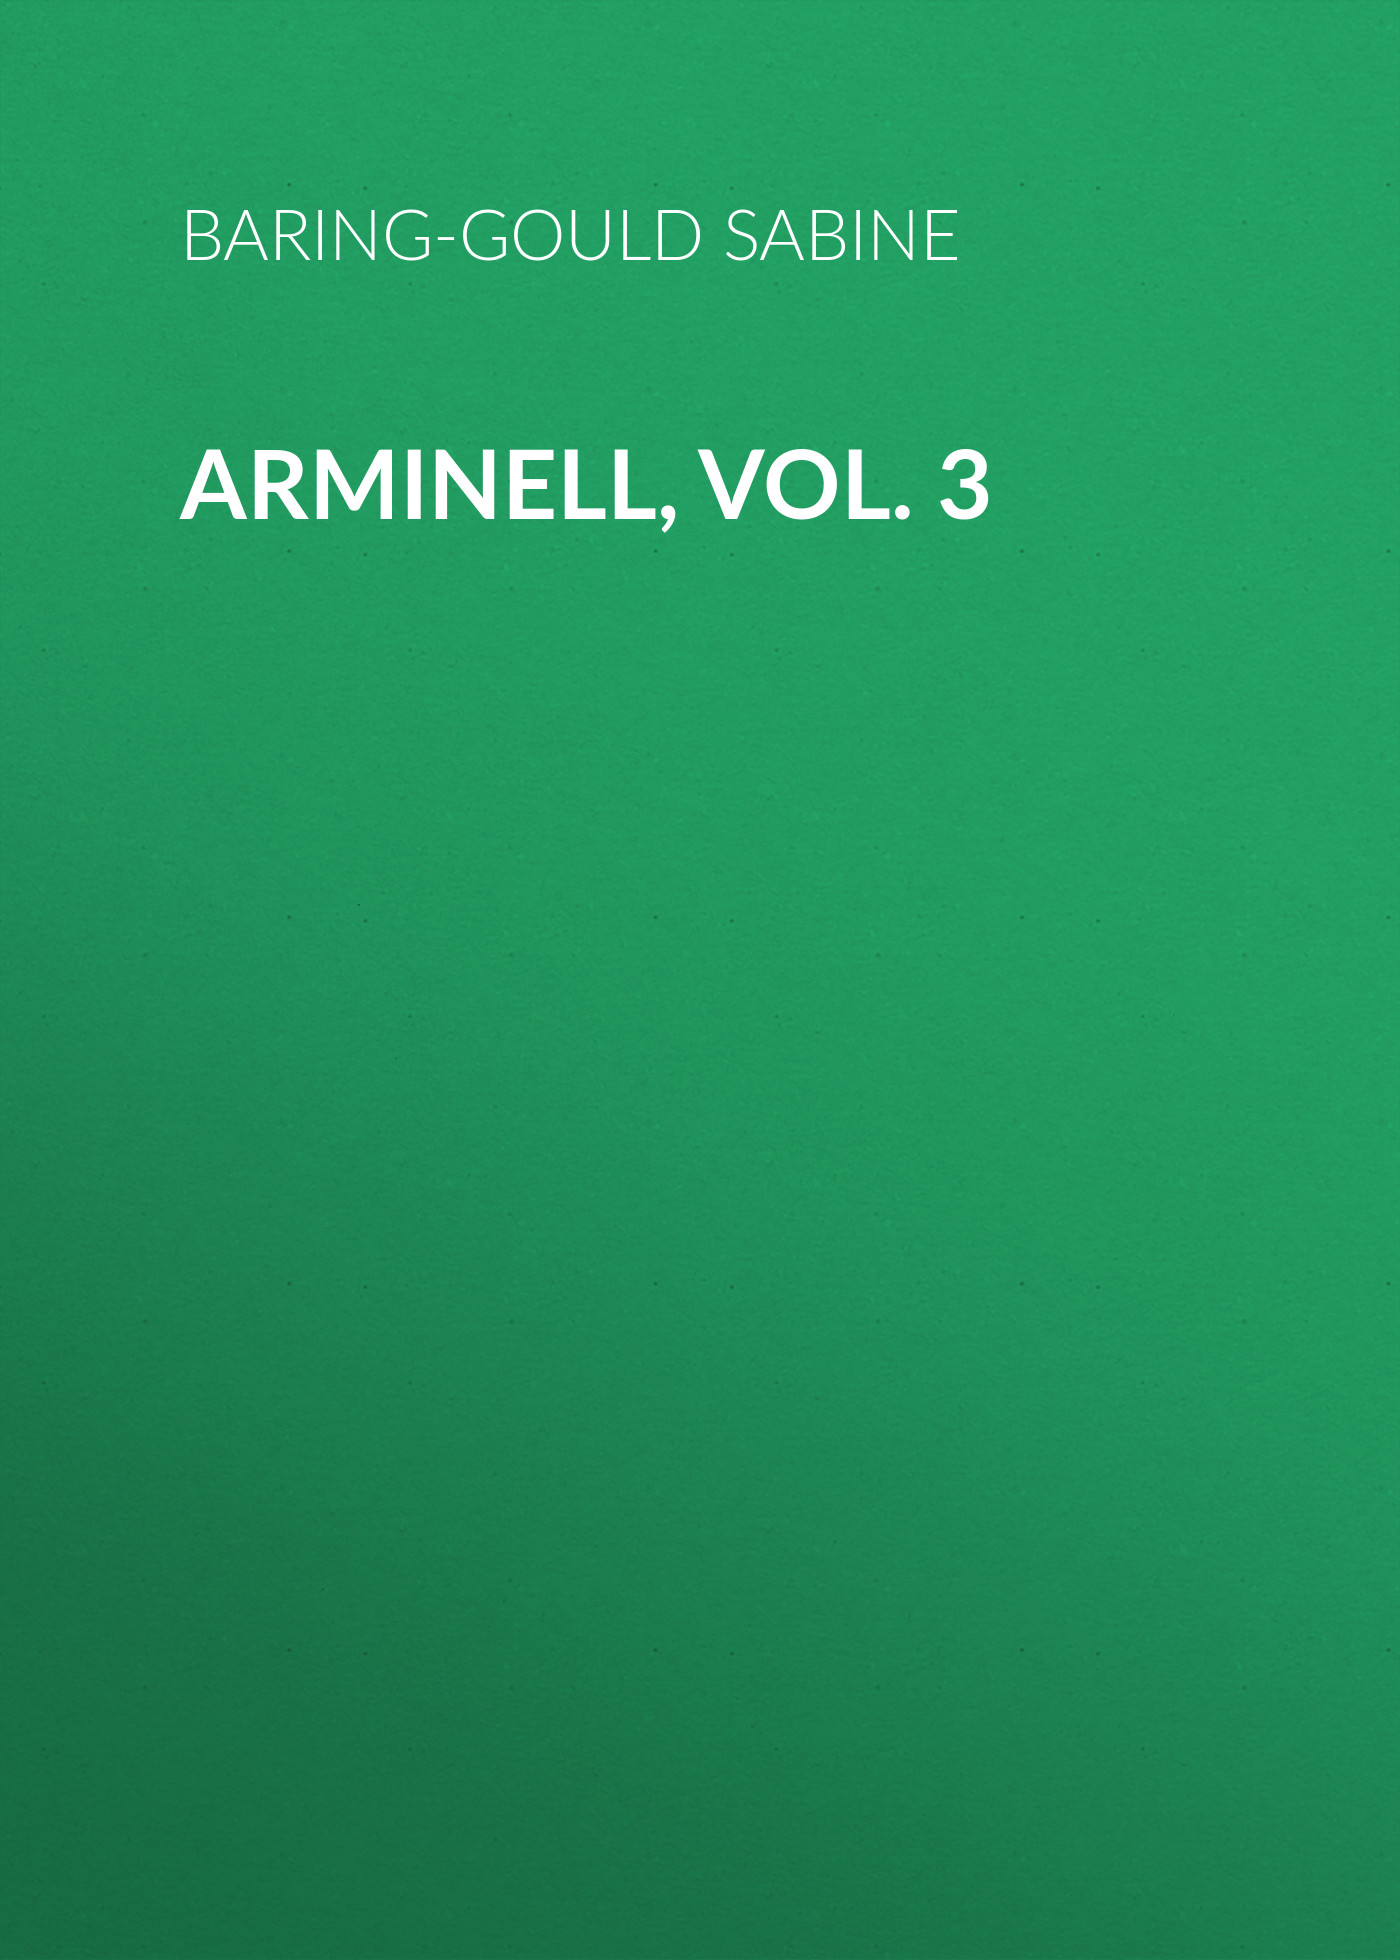 Книга Arminell, Vol. 3 из серии , созданная Sabine Baring-Gould, может относится к жанру Зарубежная старинная литература, Зарубежная классика. Стоимость электронной книги Arminell, Vol. 3 с идентификатором 24172580 составляет 0 руб.